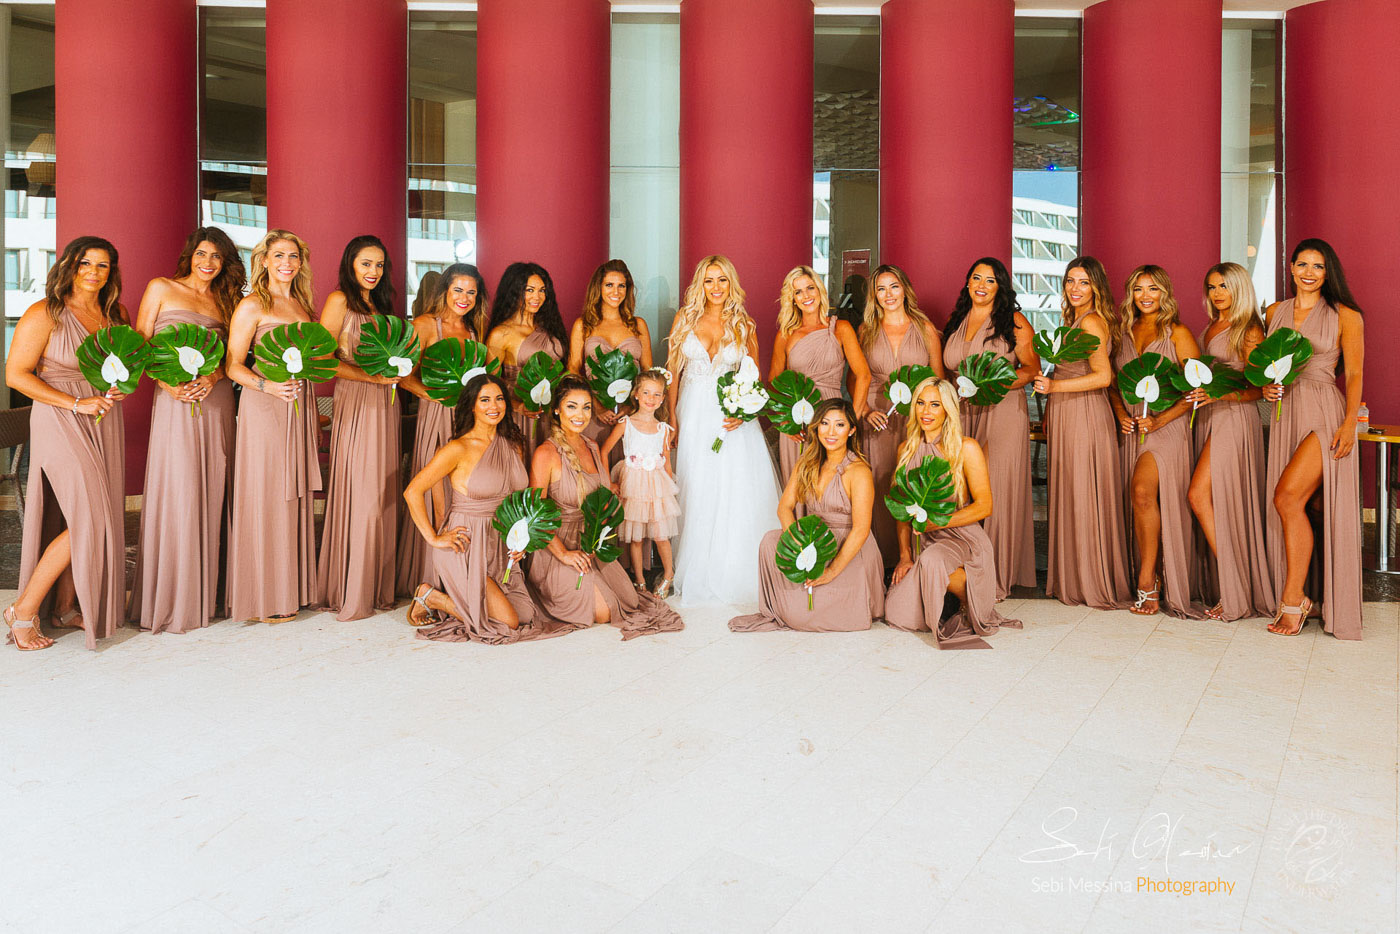 Bridesmaids at a destination wedding in Cancun Mexico – Sebi Messina Photography